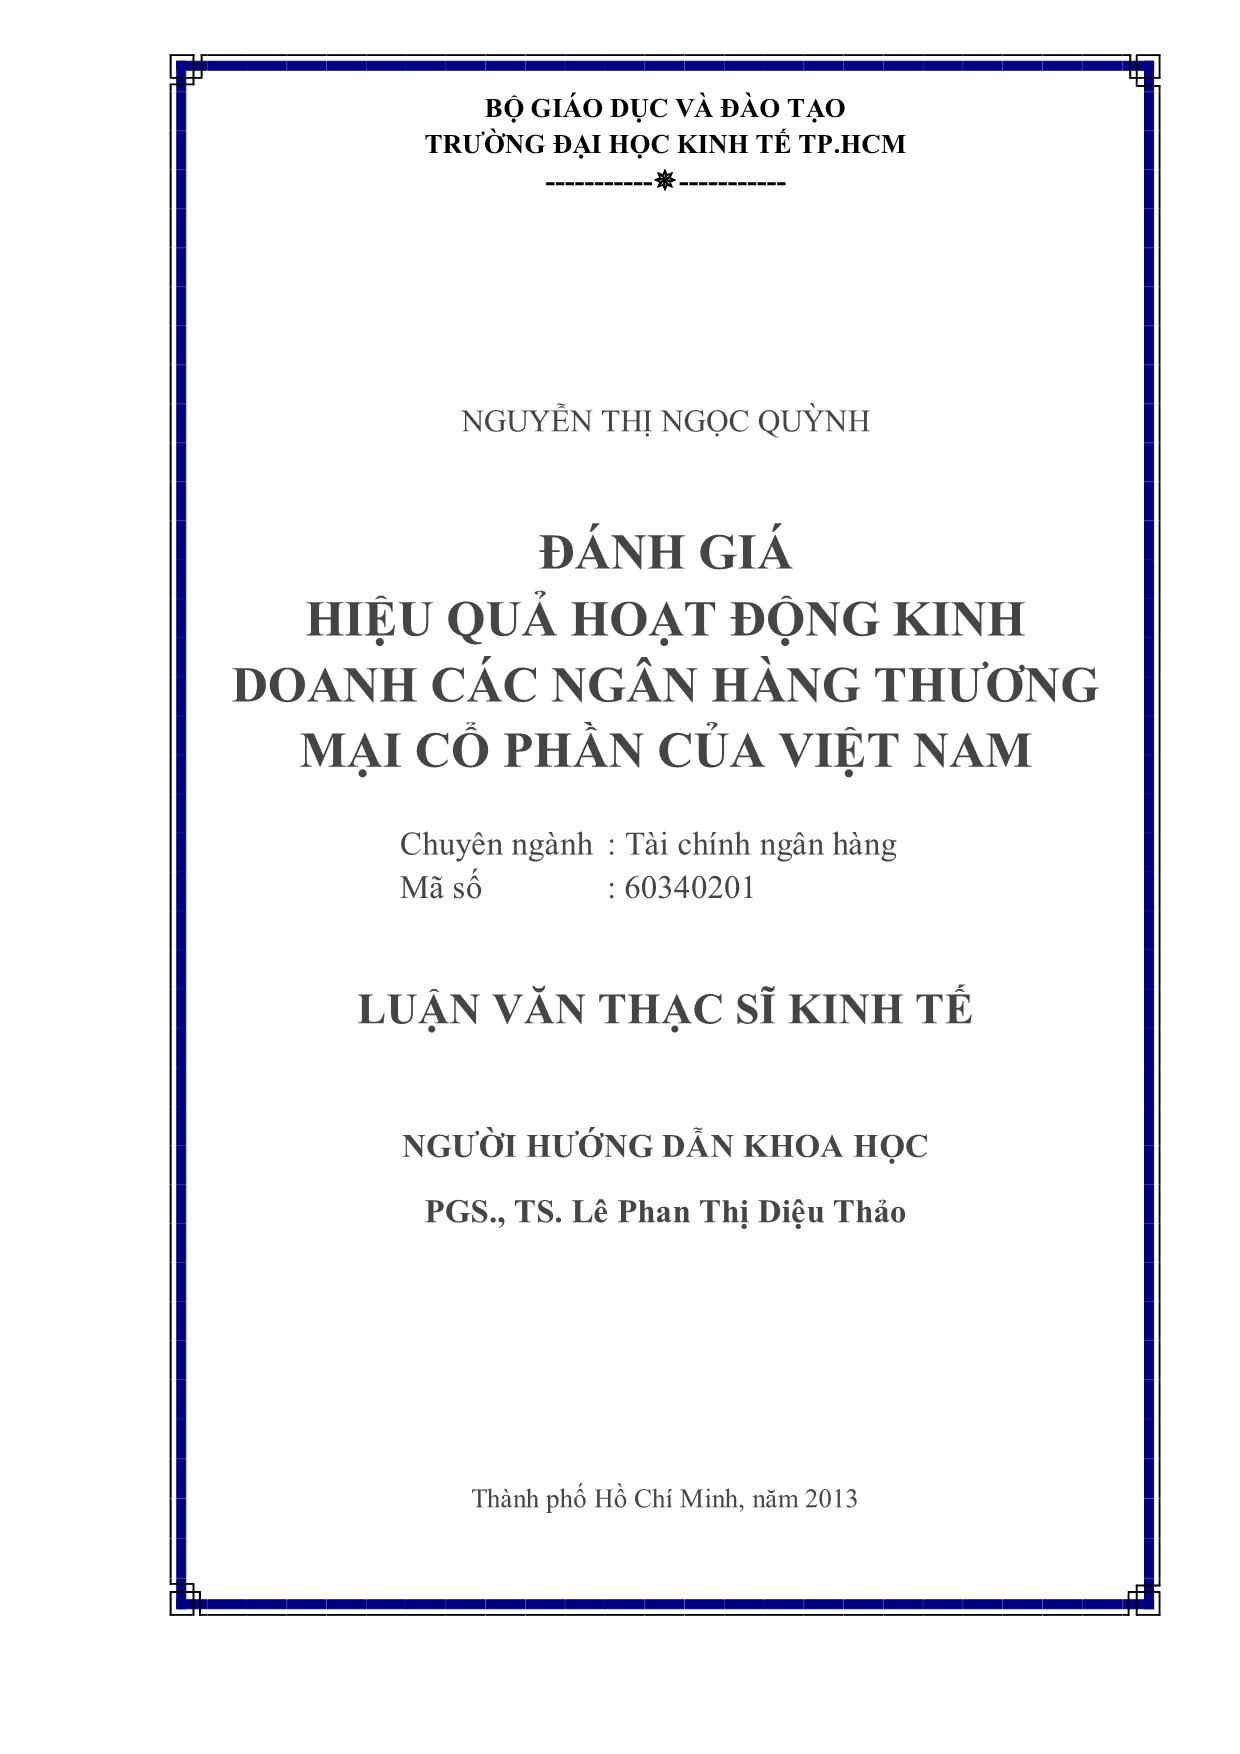 Đánh giá hiệu quả hoạt động kinh doanh các ngân hàng thương mại cổ phần của Việt Nam trang 2